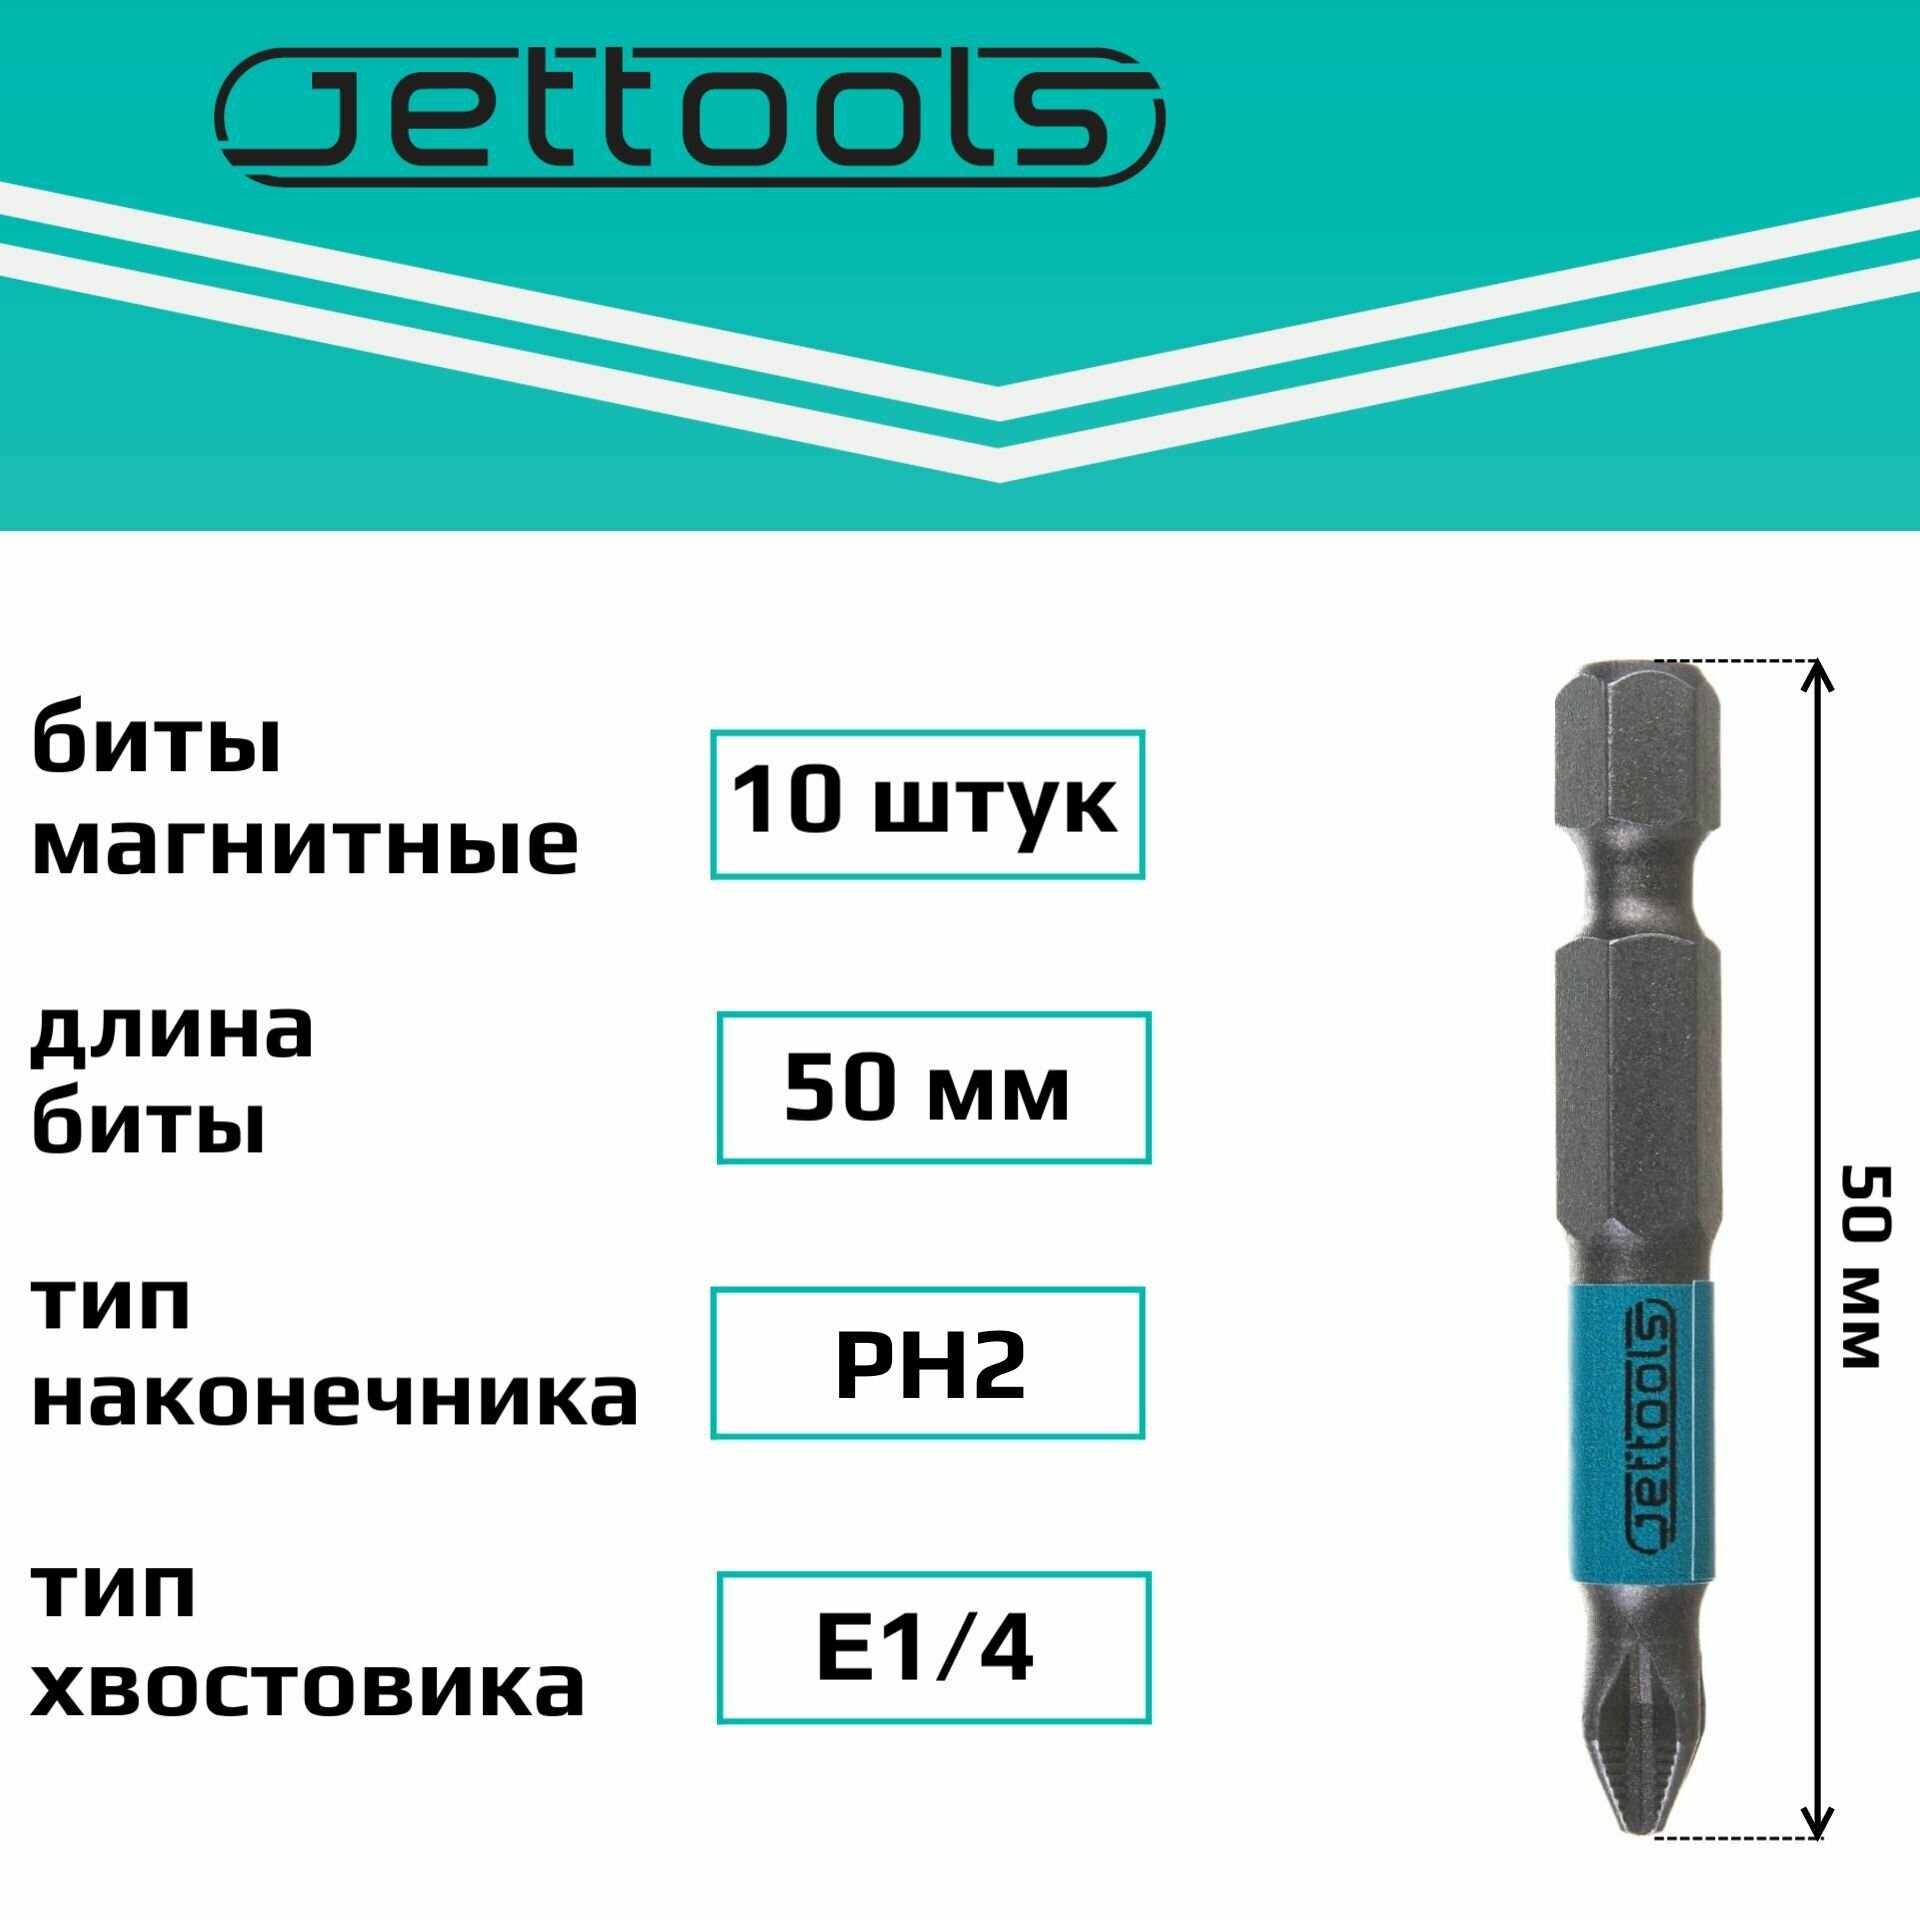 Биты PH2 50 мм Jettools магнитные для шуруповерта для больших нагрузок, 10 штук